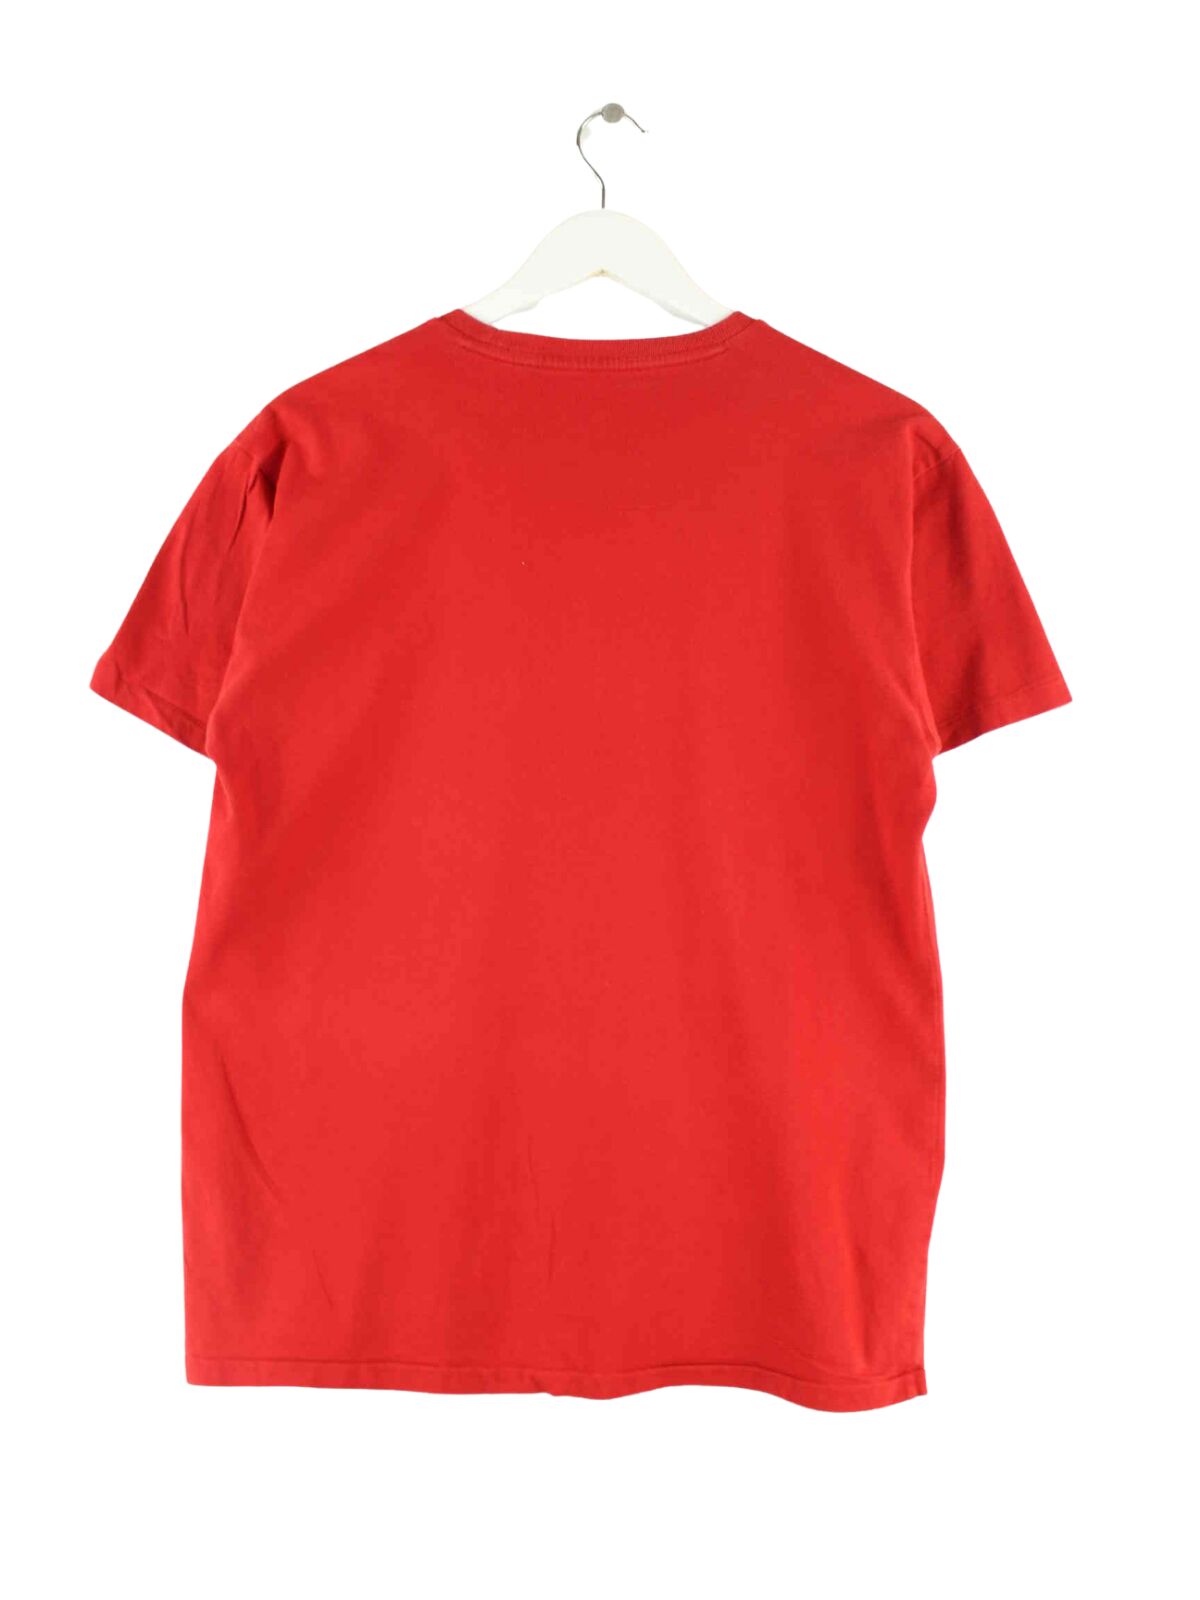 Ralph Lauren Basic T-Shirt Rot S (back image)